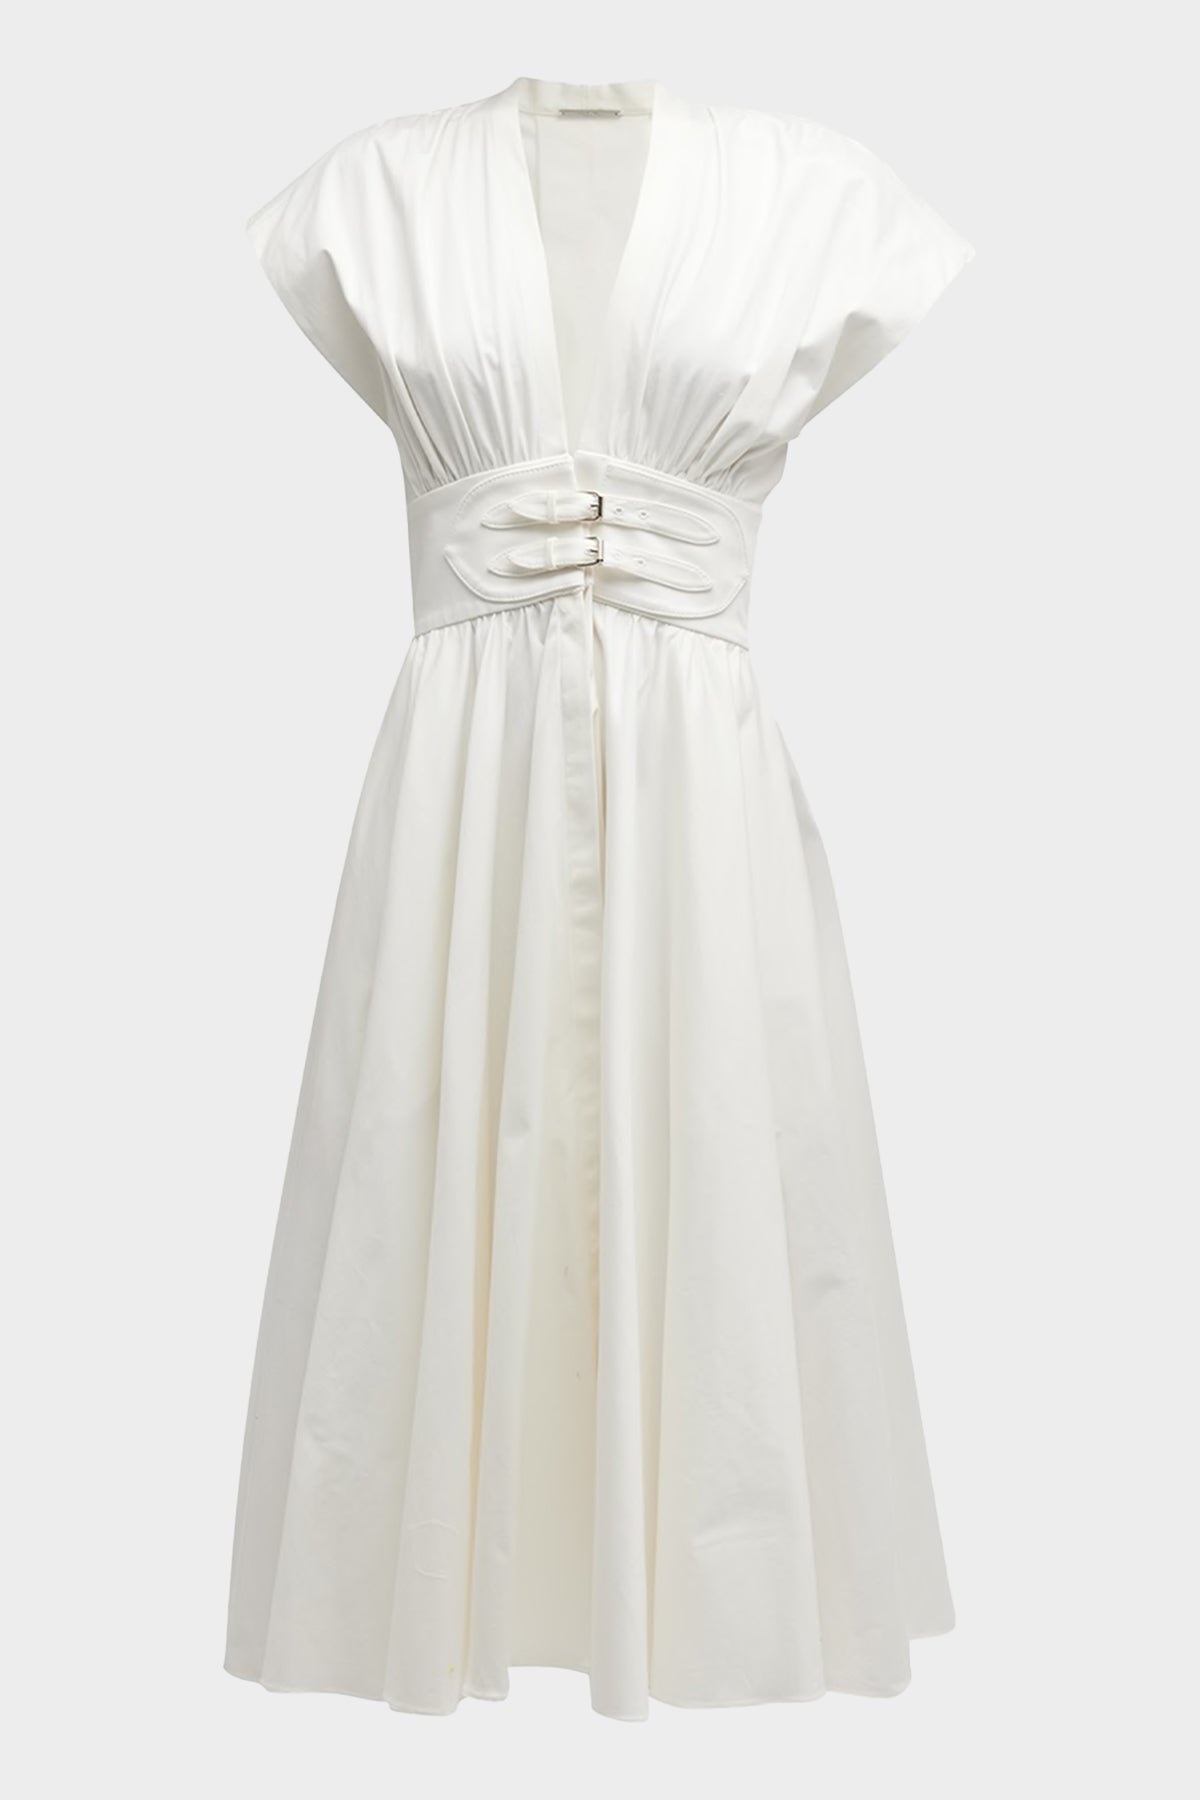 Jaden Midi Dress in White - shop-olivia.com